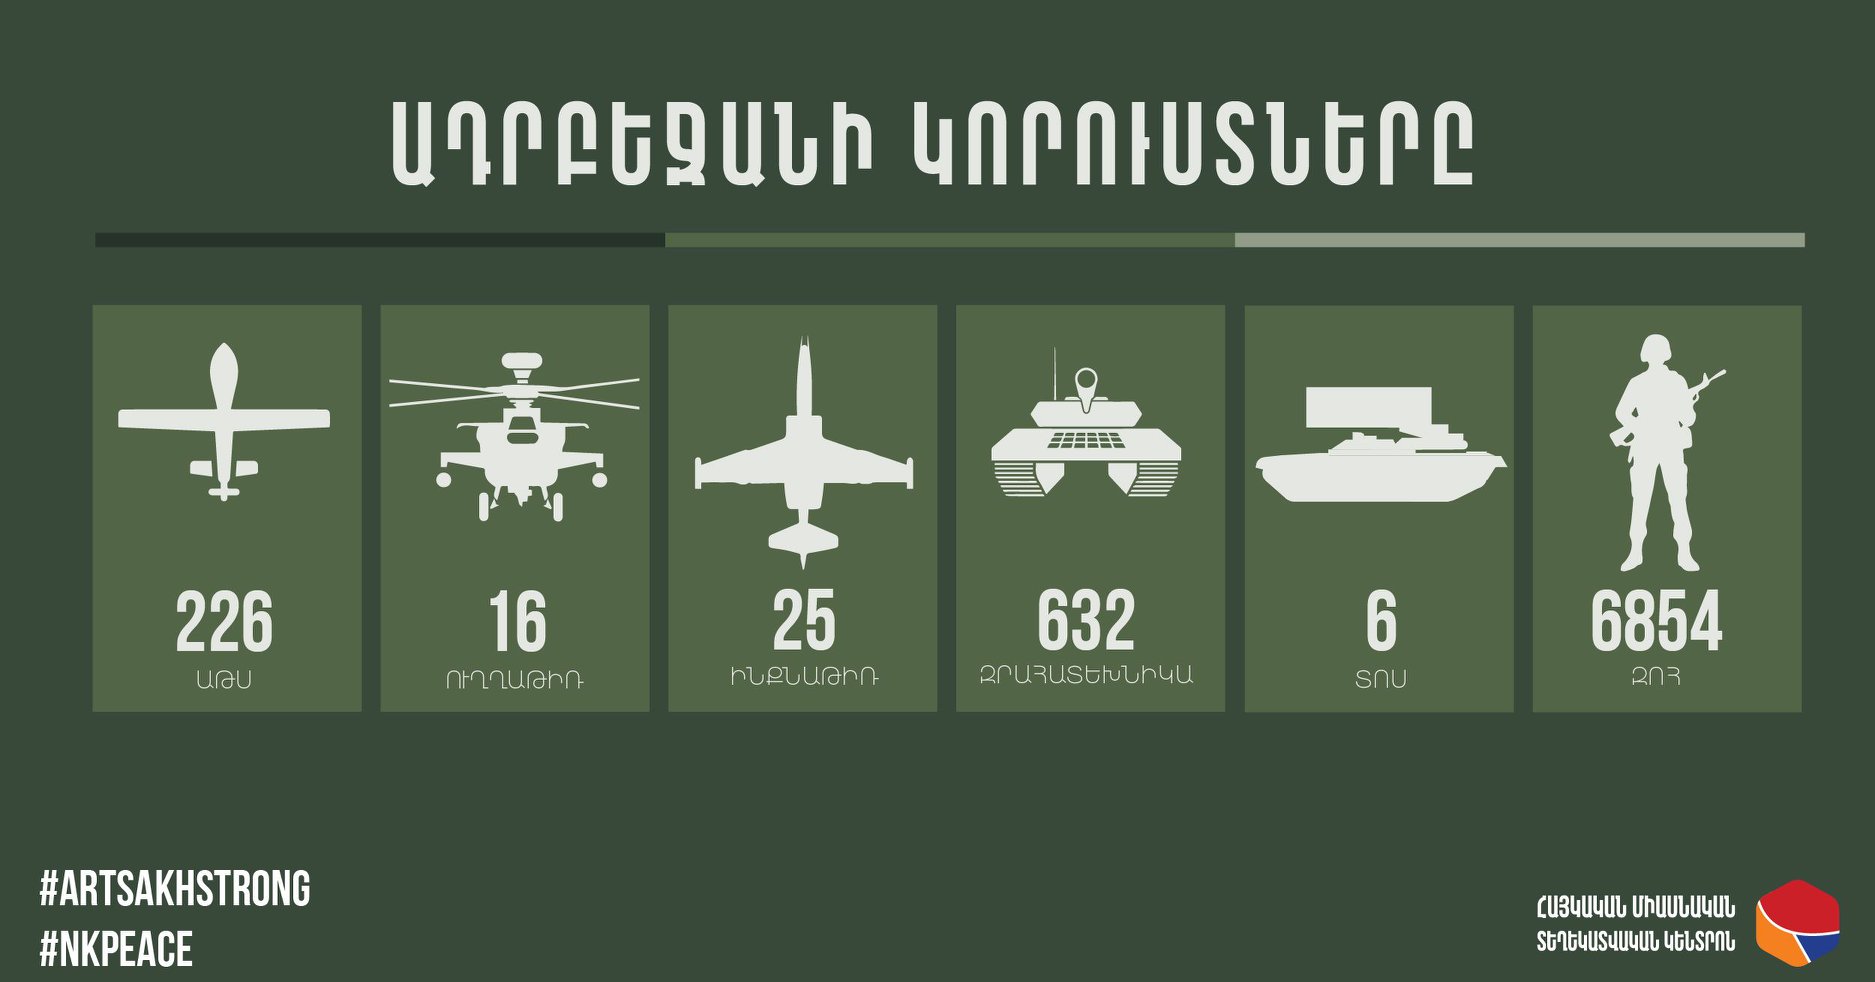 Поражены еще 3 БПЛА врага, 14 единиц бронетехники, есть 105 погибших: потери Азербайджана